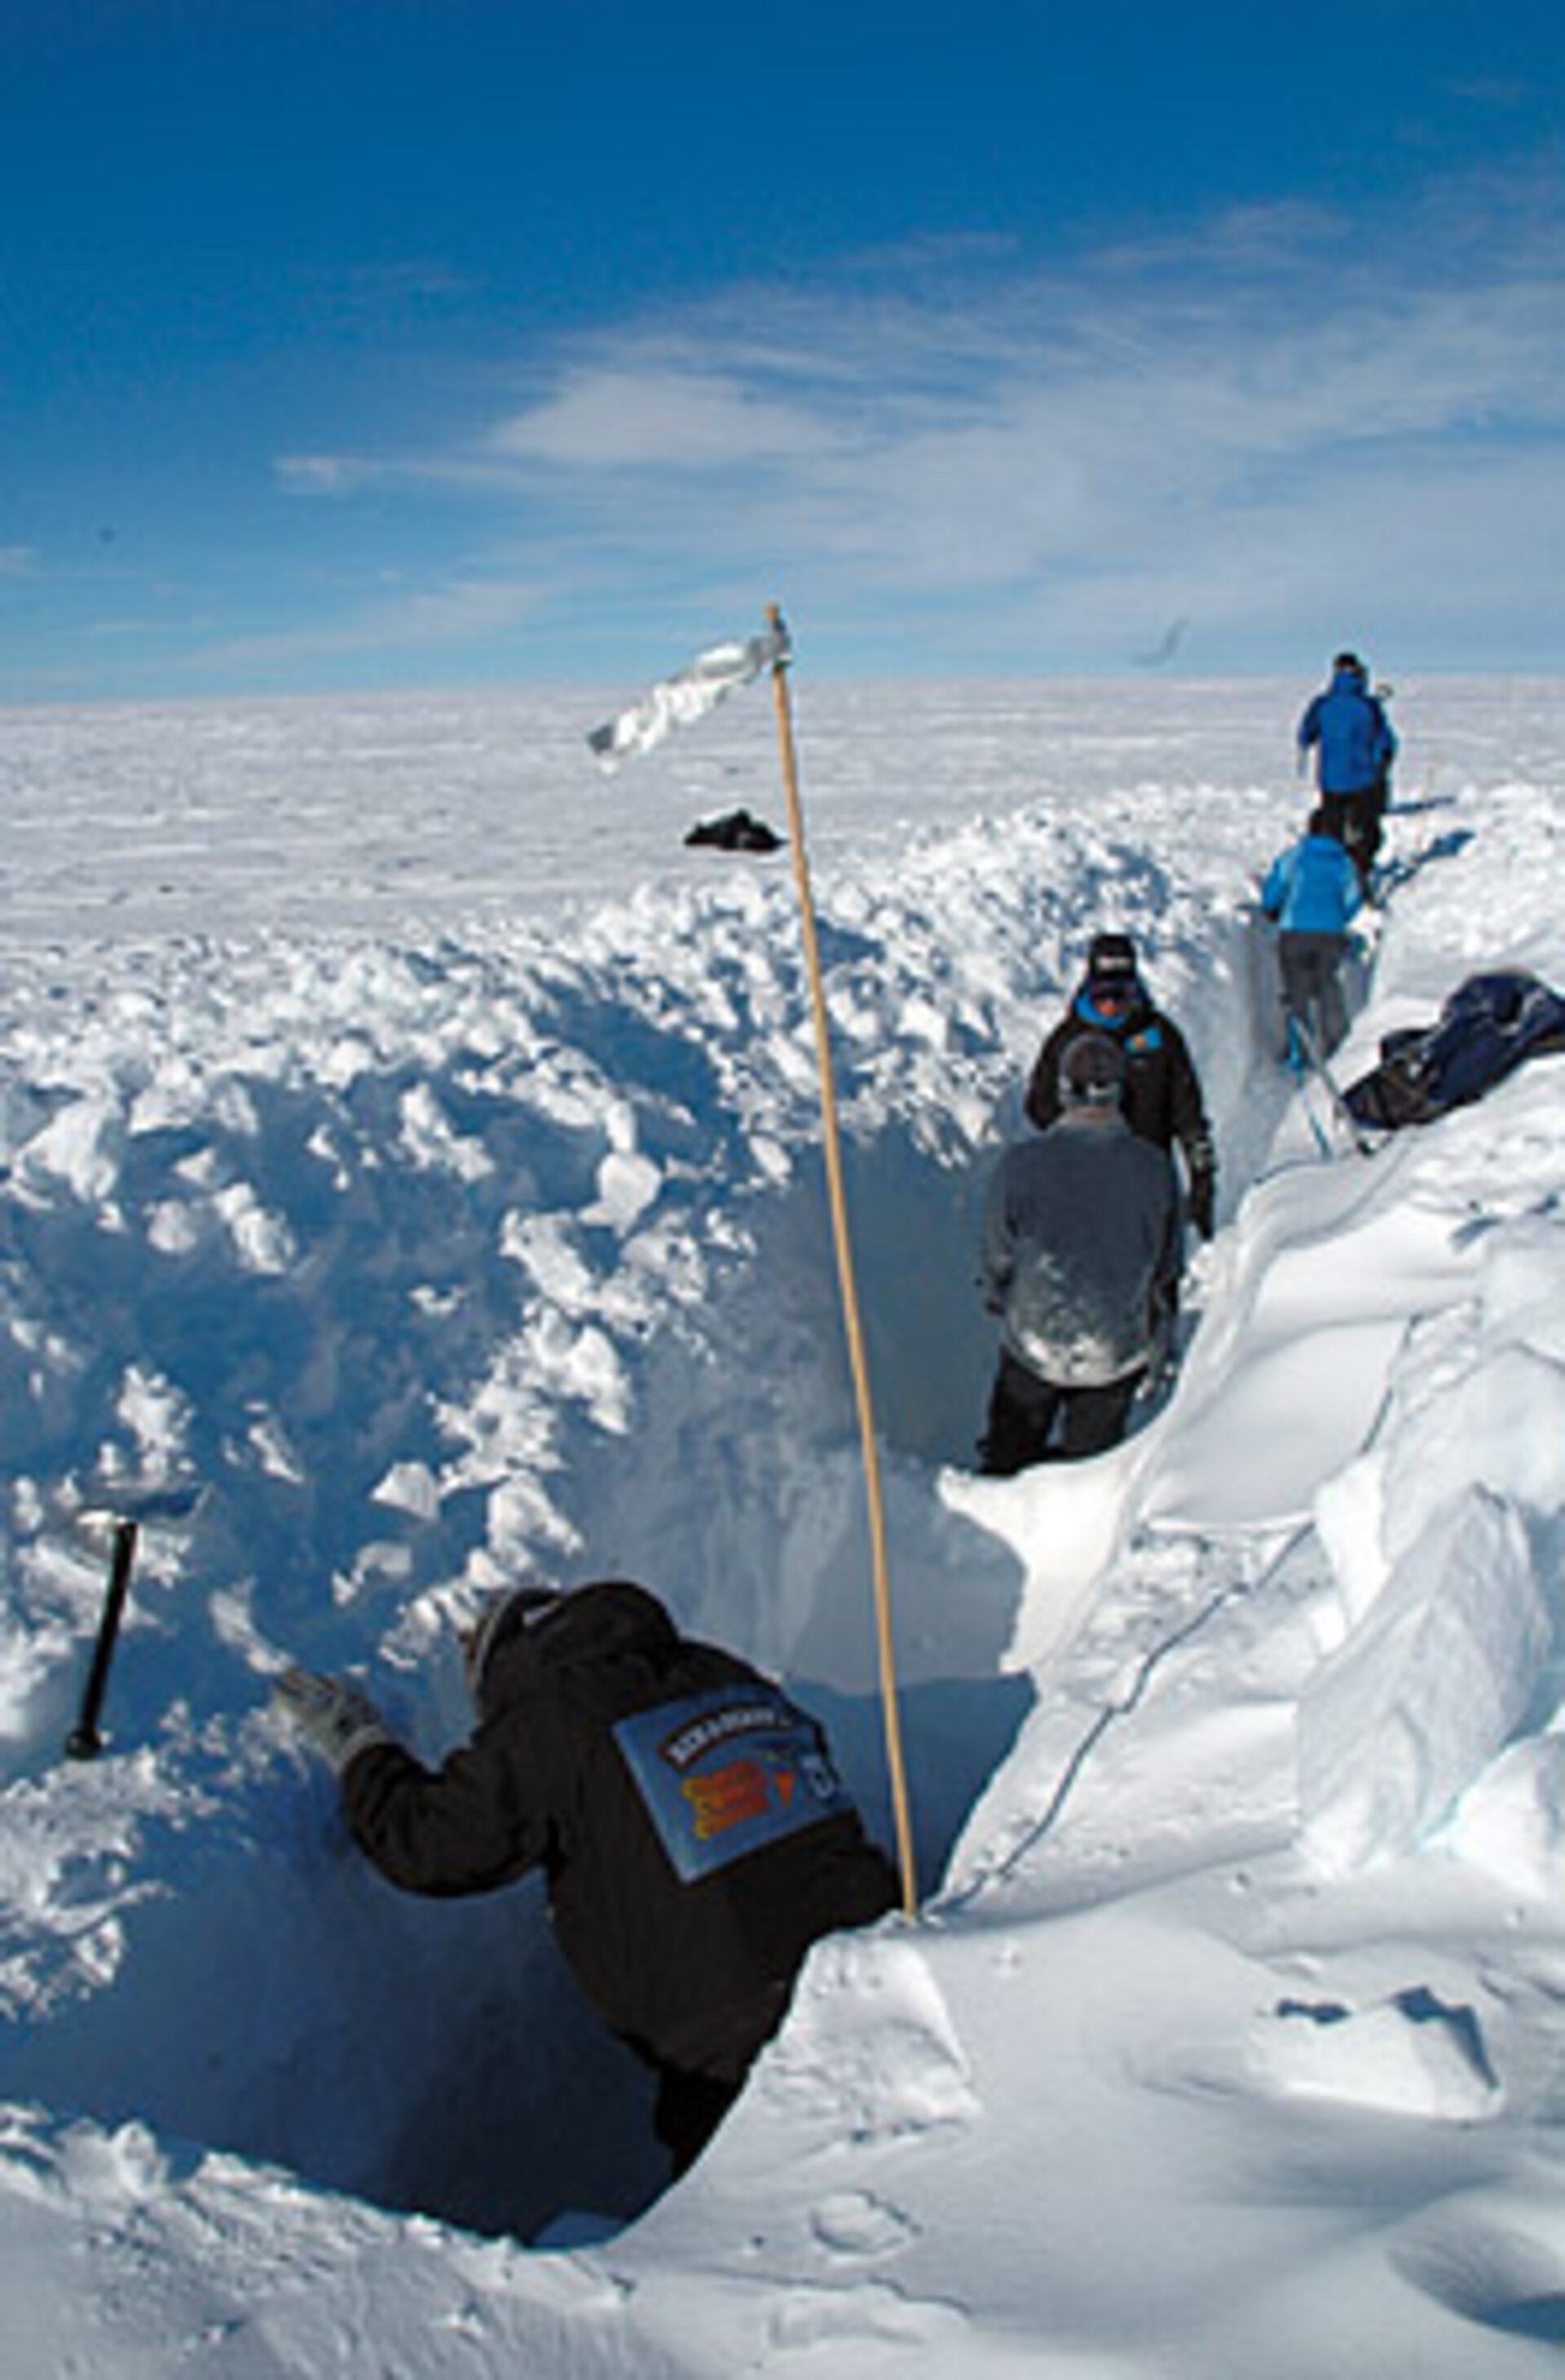 Field work in Greenland